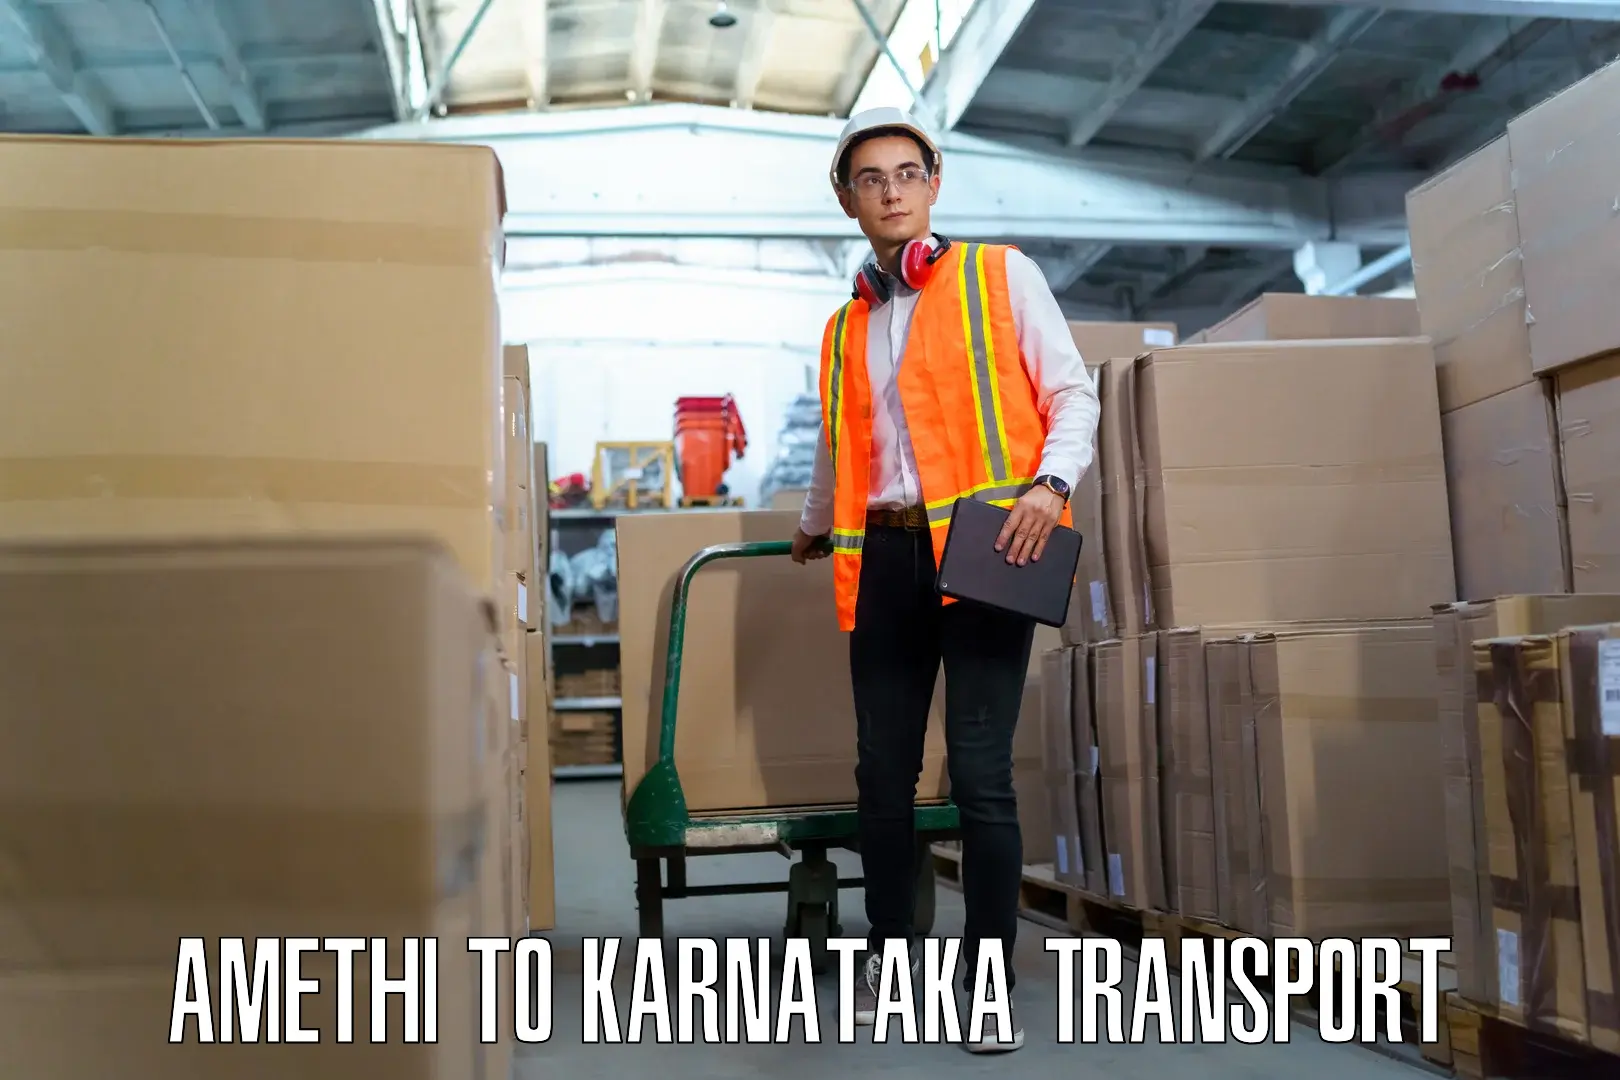 Transport in sharing Amethi to Kanjarakatte